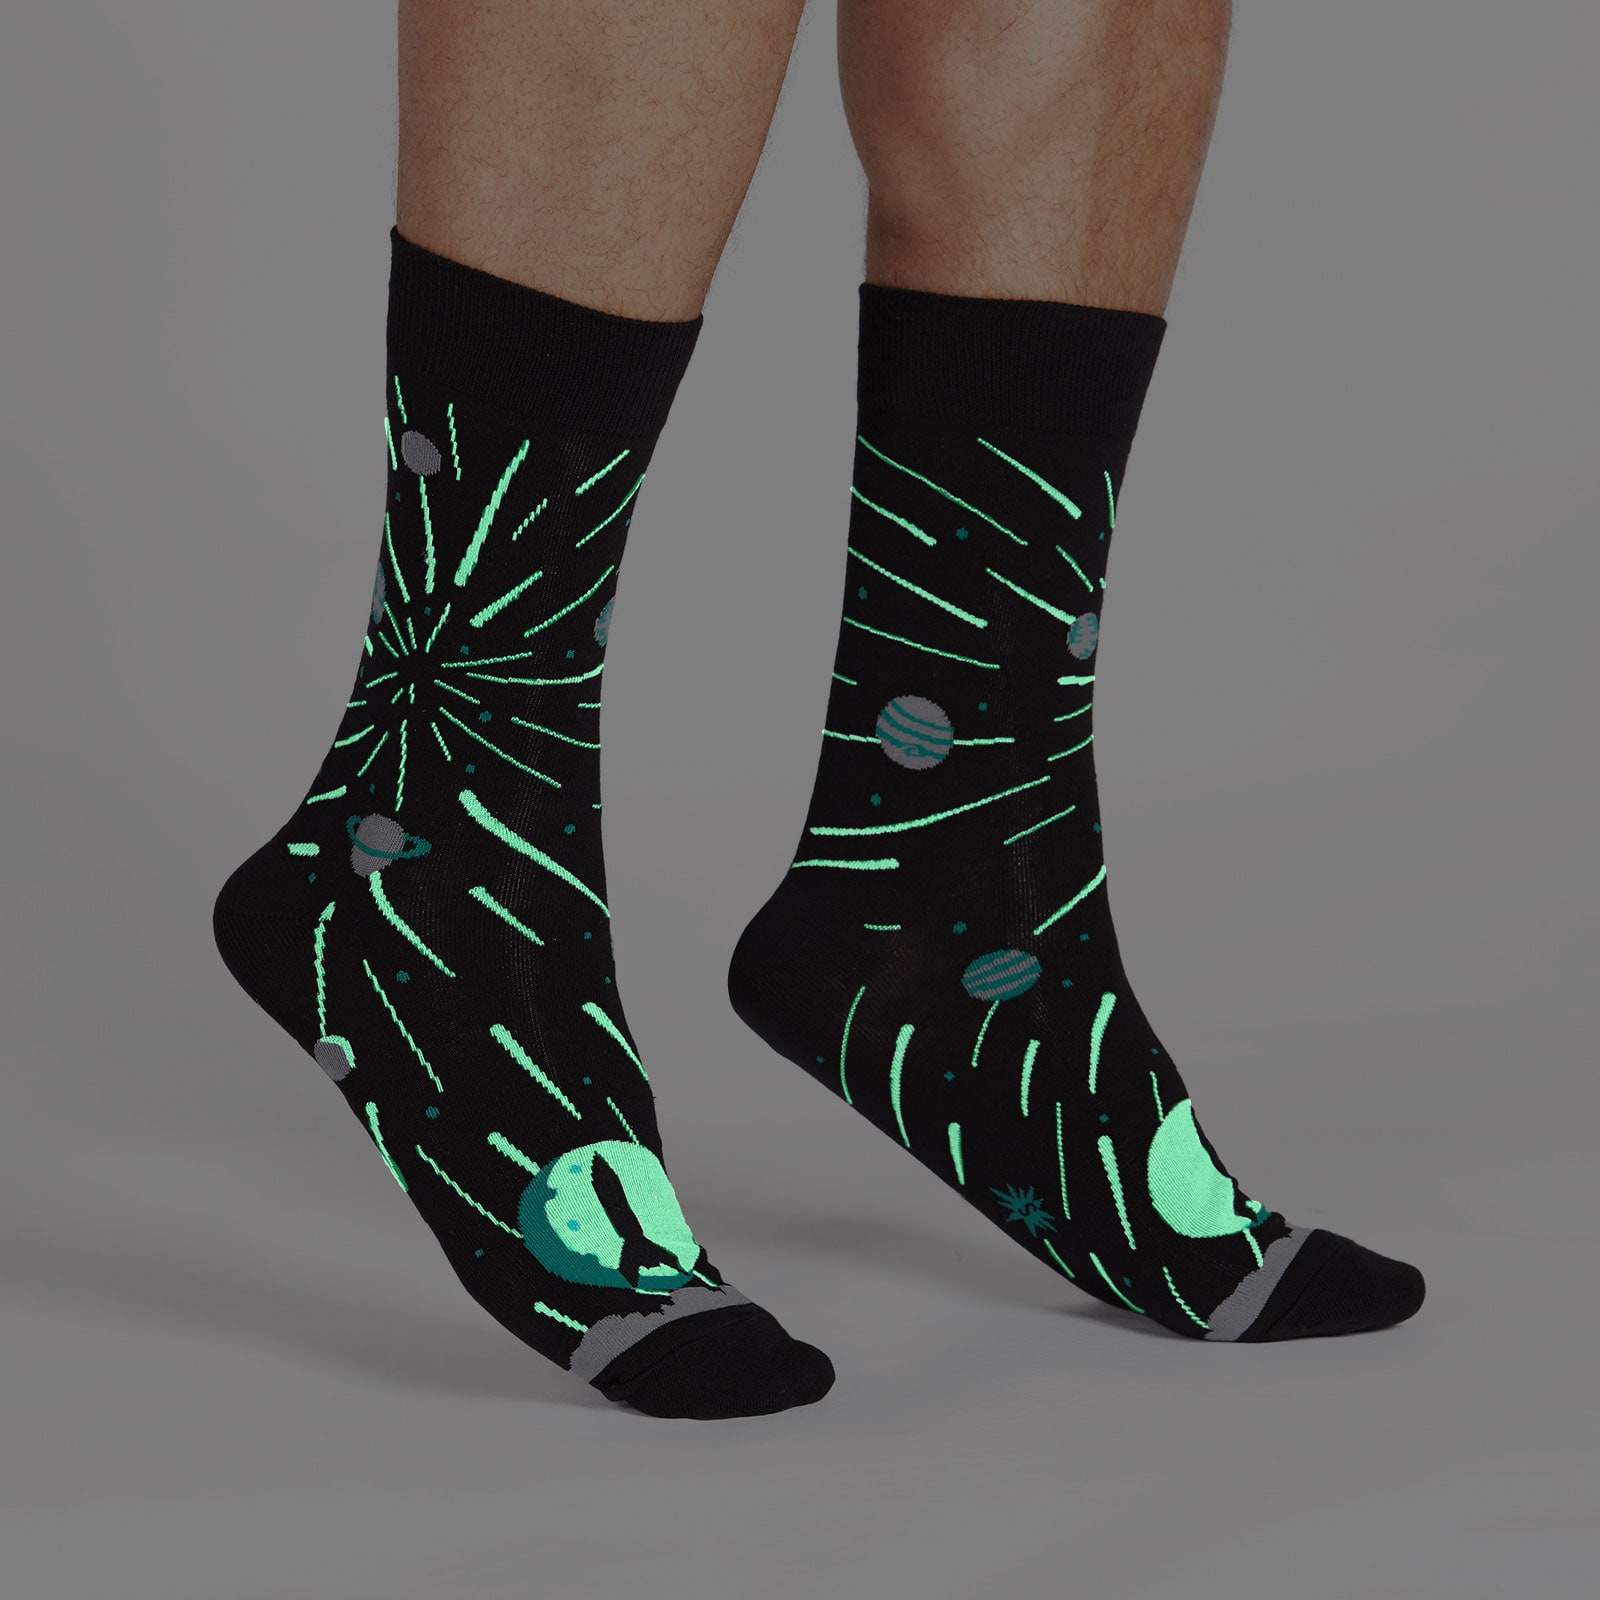 Glow in the dark socks